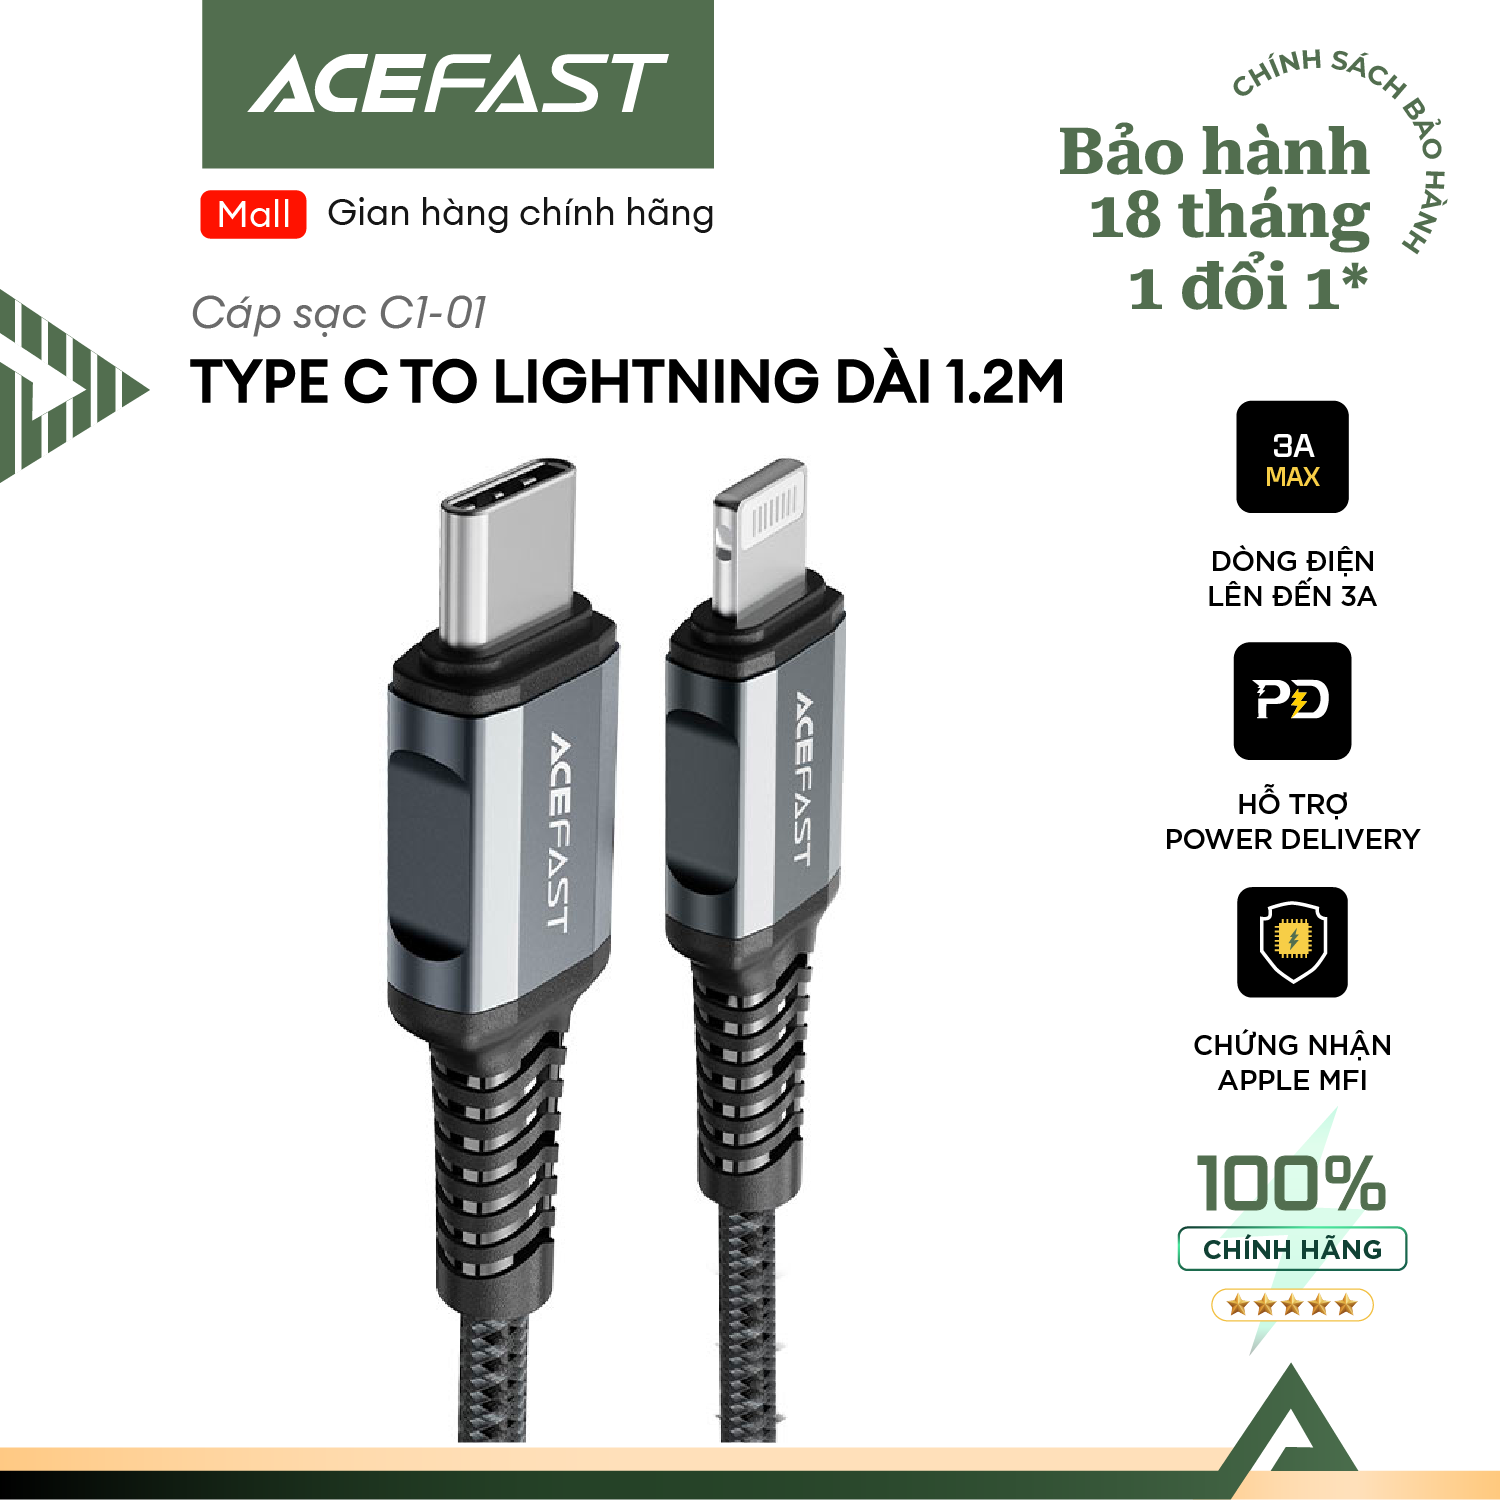 Cáp Acefast Type C to Light.ning (1.2m) - C1-01 Hàng chính hãng Acefast